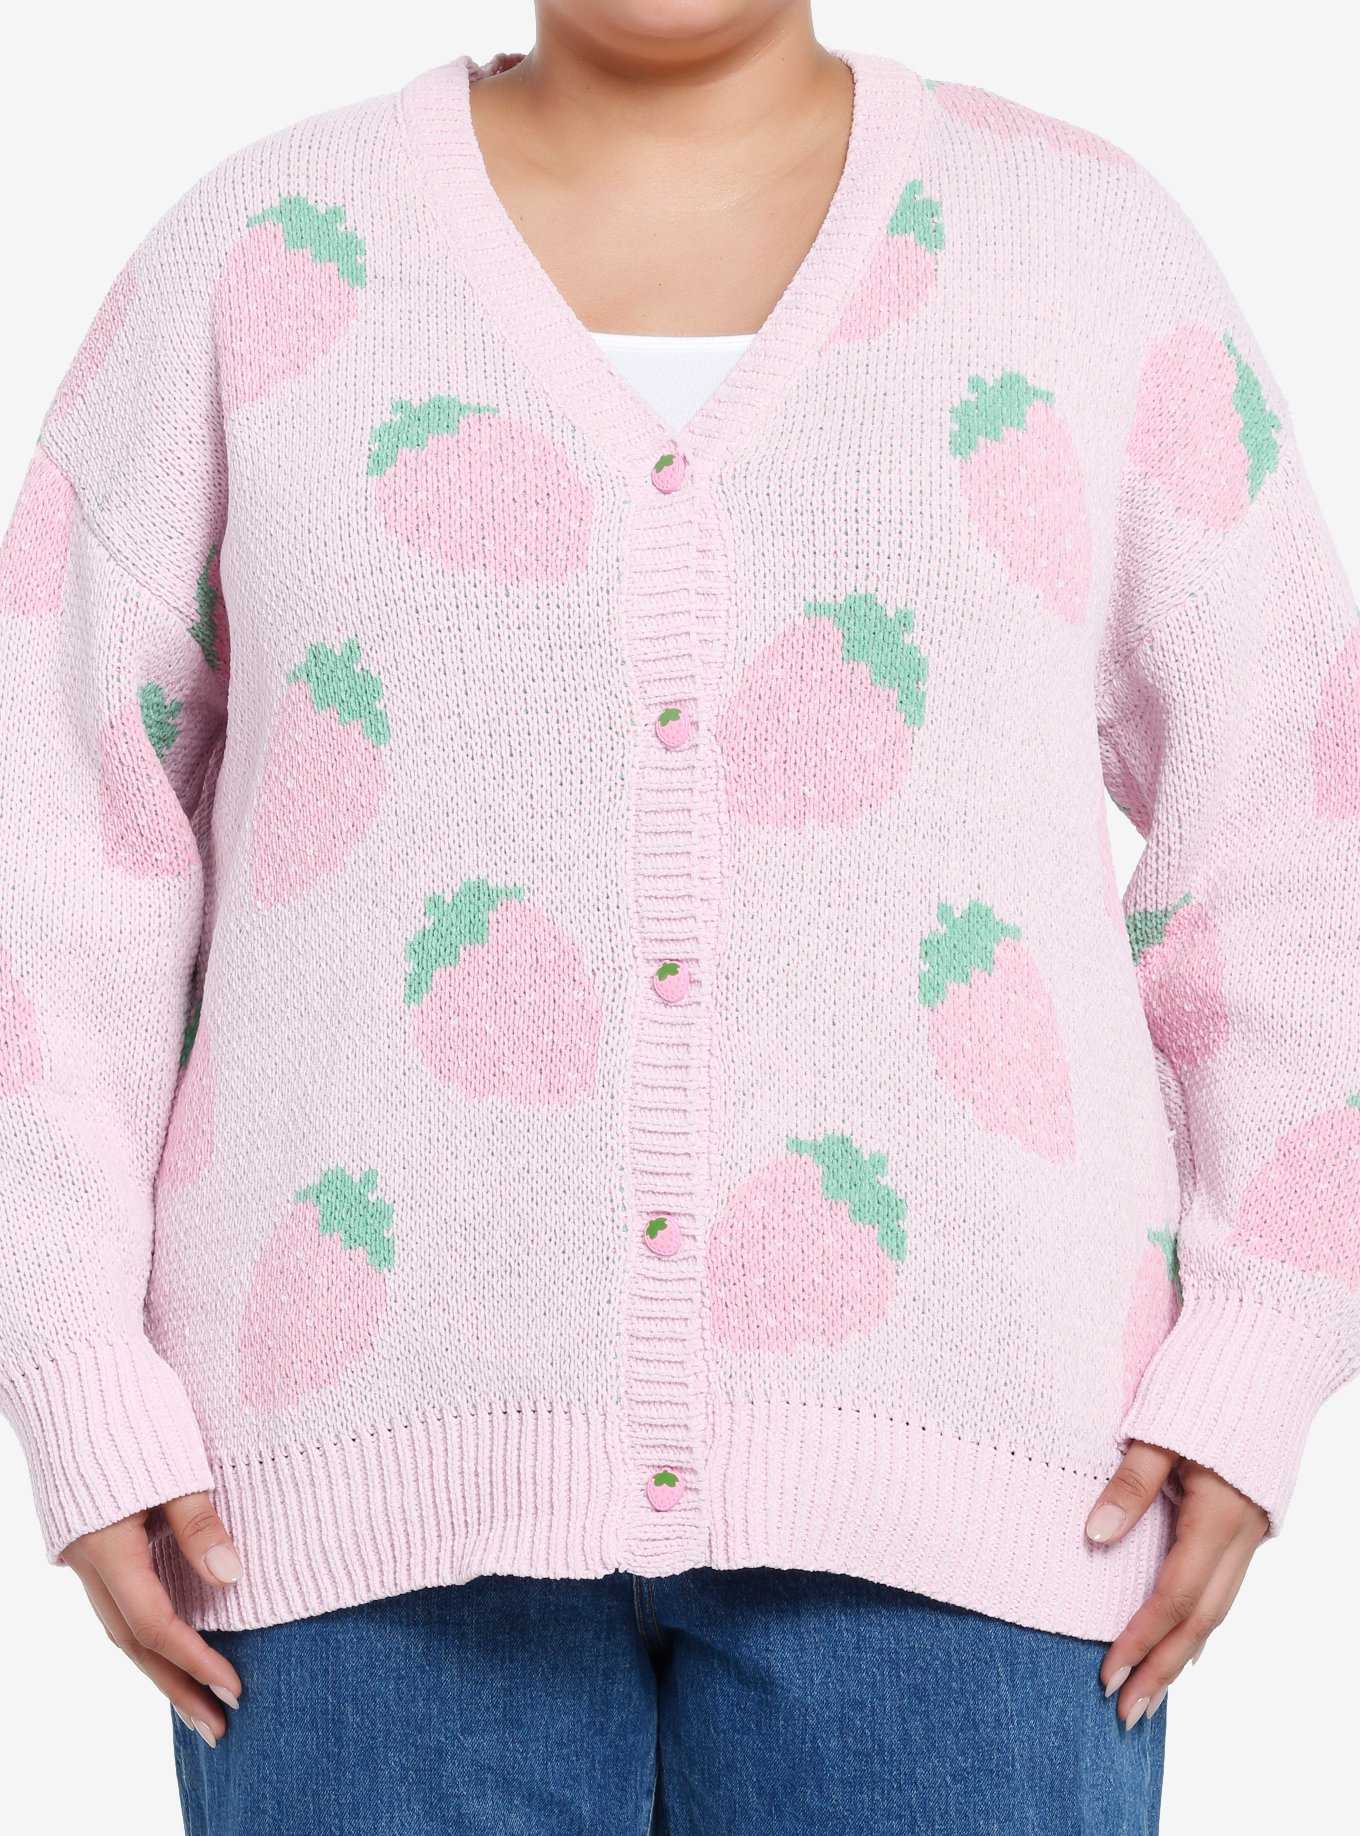 Sweet Society Pastel Pink Strawberries Girls Cardigan Plus Size, , hi-res